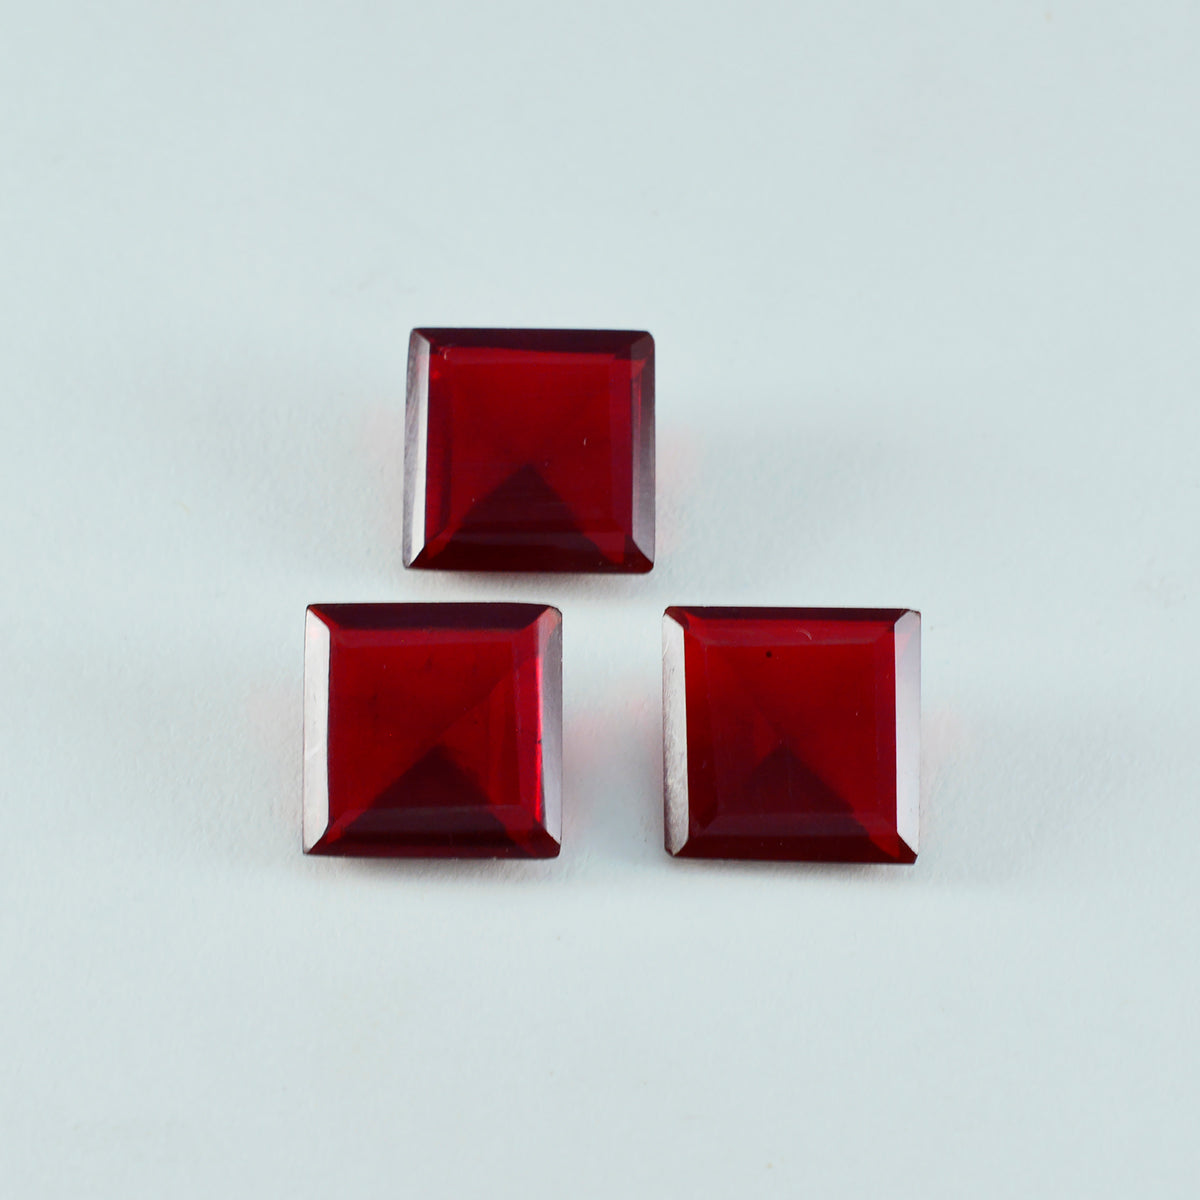 riyogems 1шт красный рубин cz ограненный 14x14 мм квадратной формы драгоценные камни удивительного качества